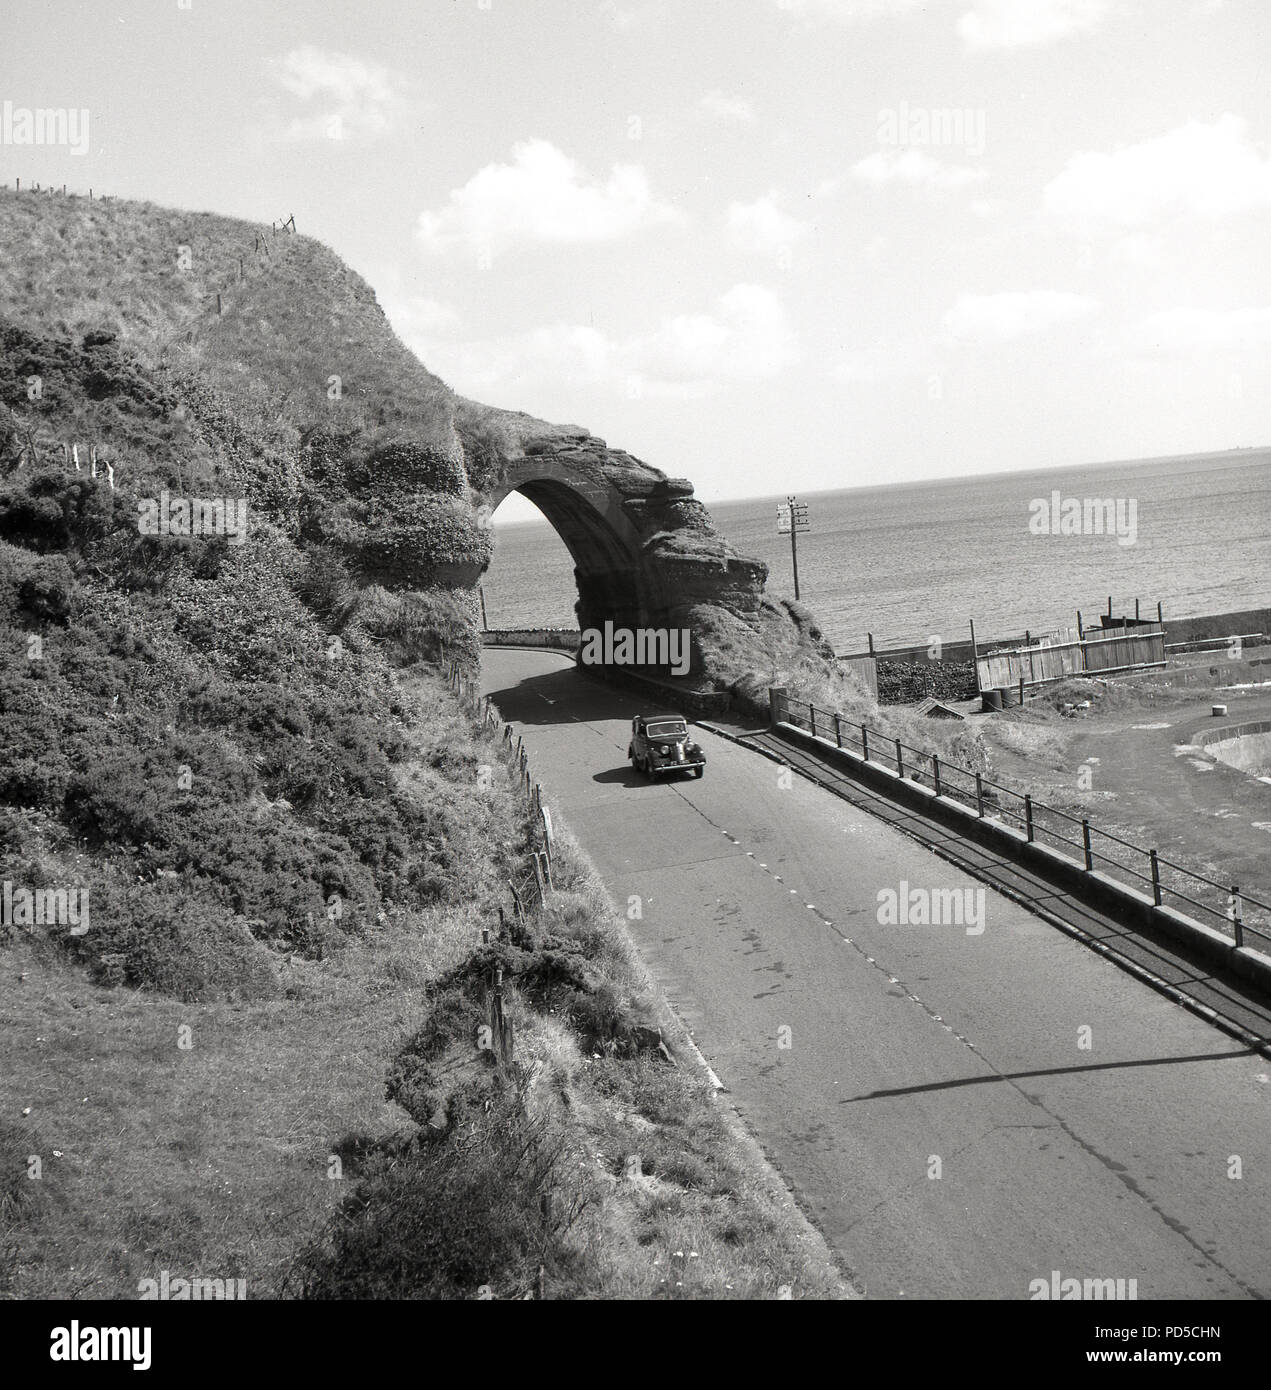 Années 1950, tableau historique par j Allan l'argent comptant, une voiture de l'époque voyageant sur un quartier calme, à vide, sur la spectaculaire route côtière causeway Antrim, Irlande du Nord, Royaume-Uni. Banque D'Images